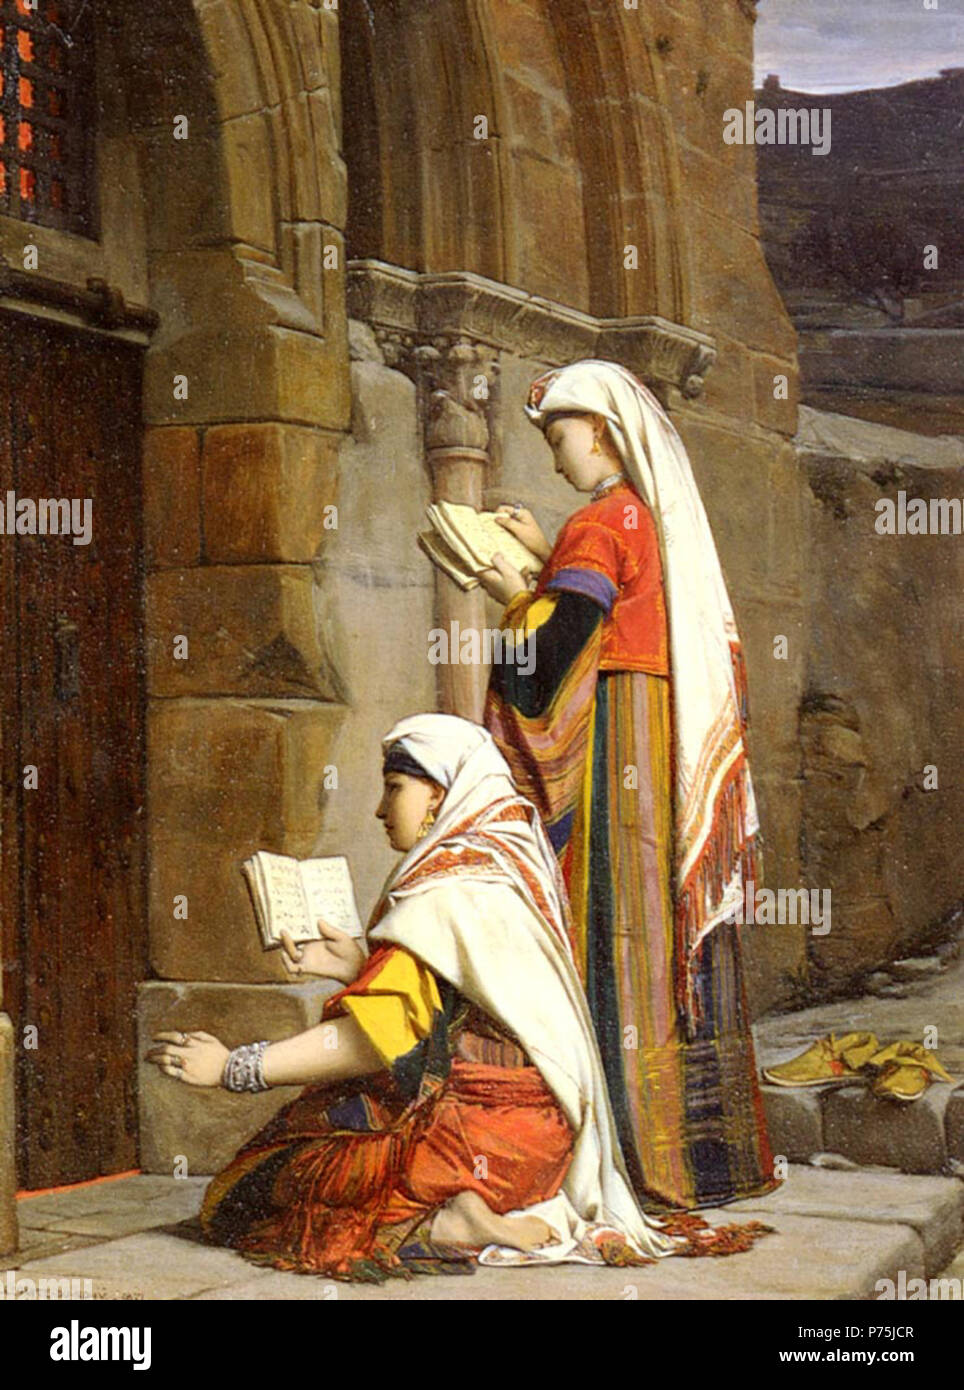 . Chrétiennes Au Tombeau De la Vierge, Jerusalem (Christian Women at the Tomb of the Virgin, Jerusalem)  1871 155 Lecomte du Nouy Tombeau de la Vierge Stock Photo